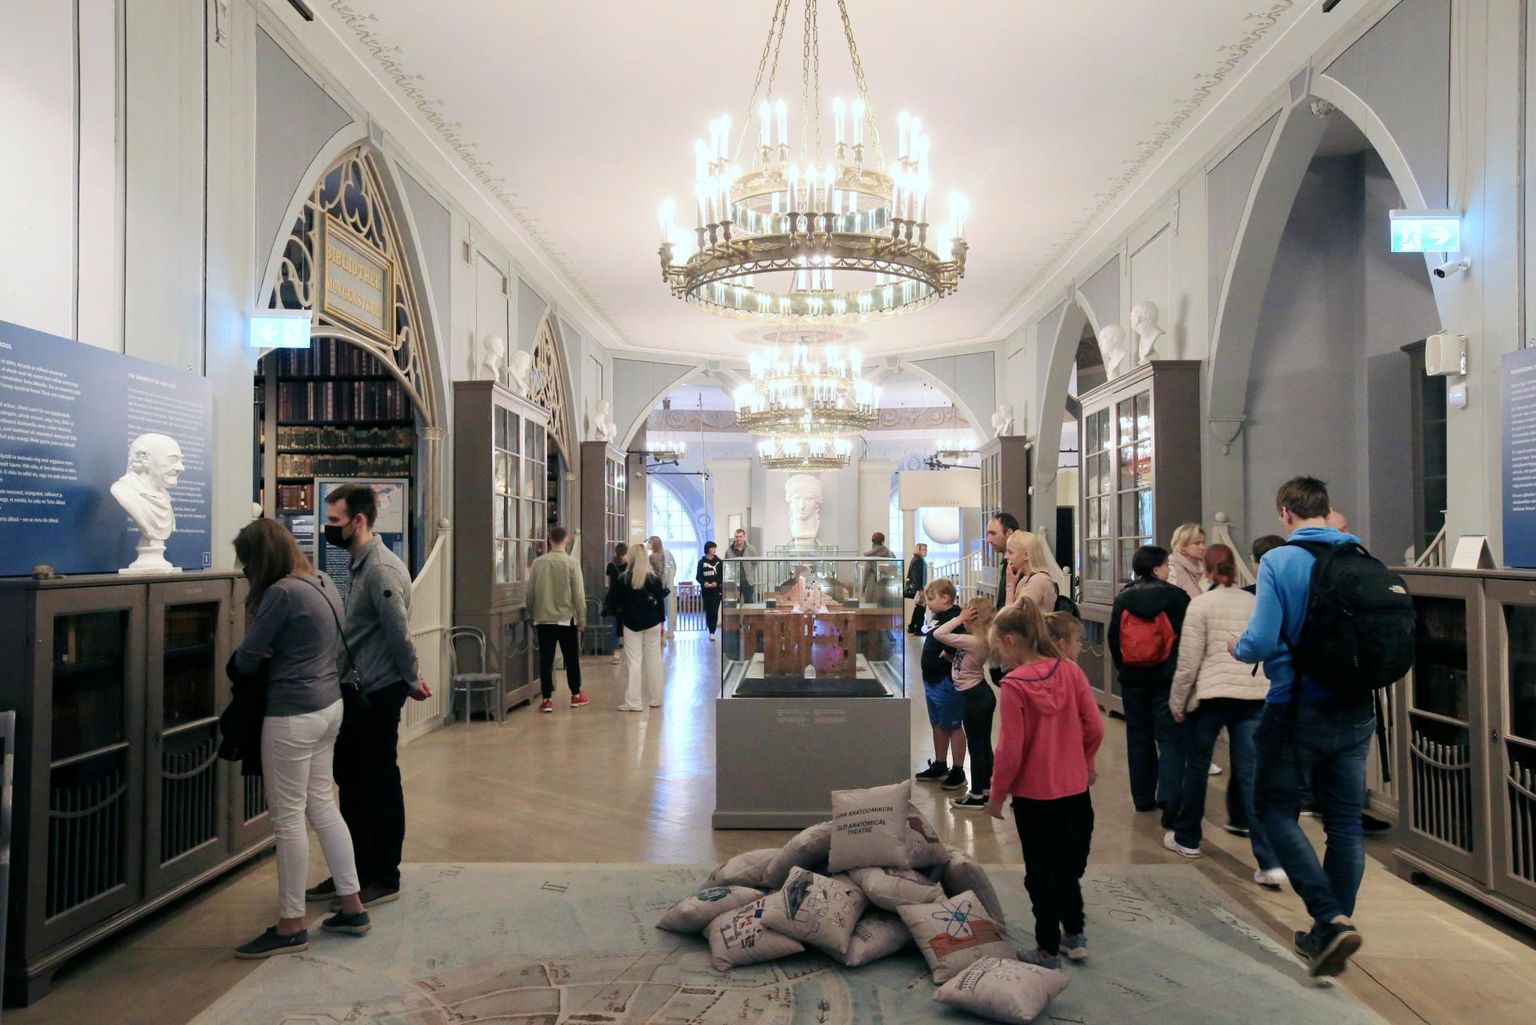 Palju muuseumiöölasi käis Toomel Tartu ülikooli muuseumis.